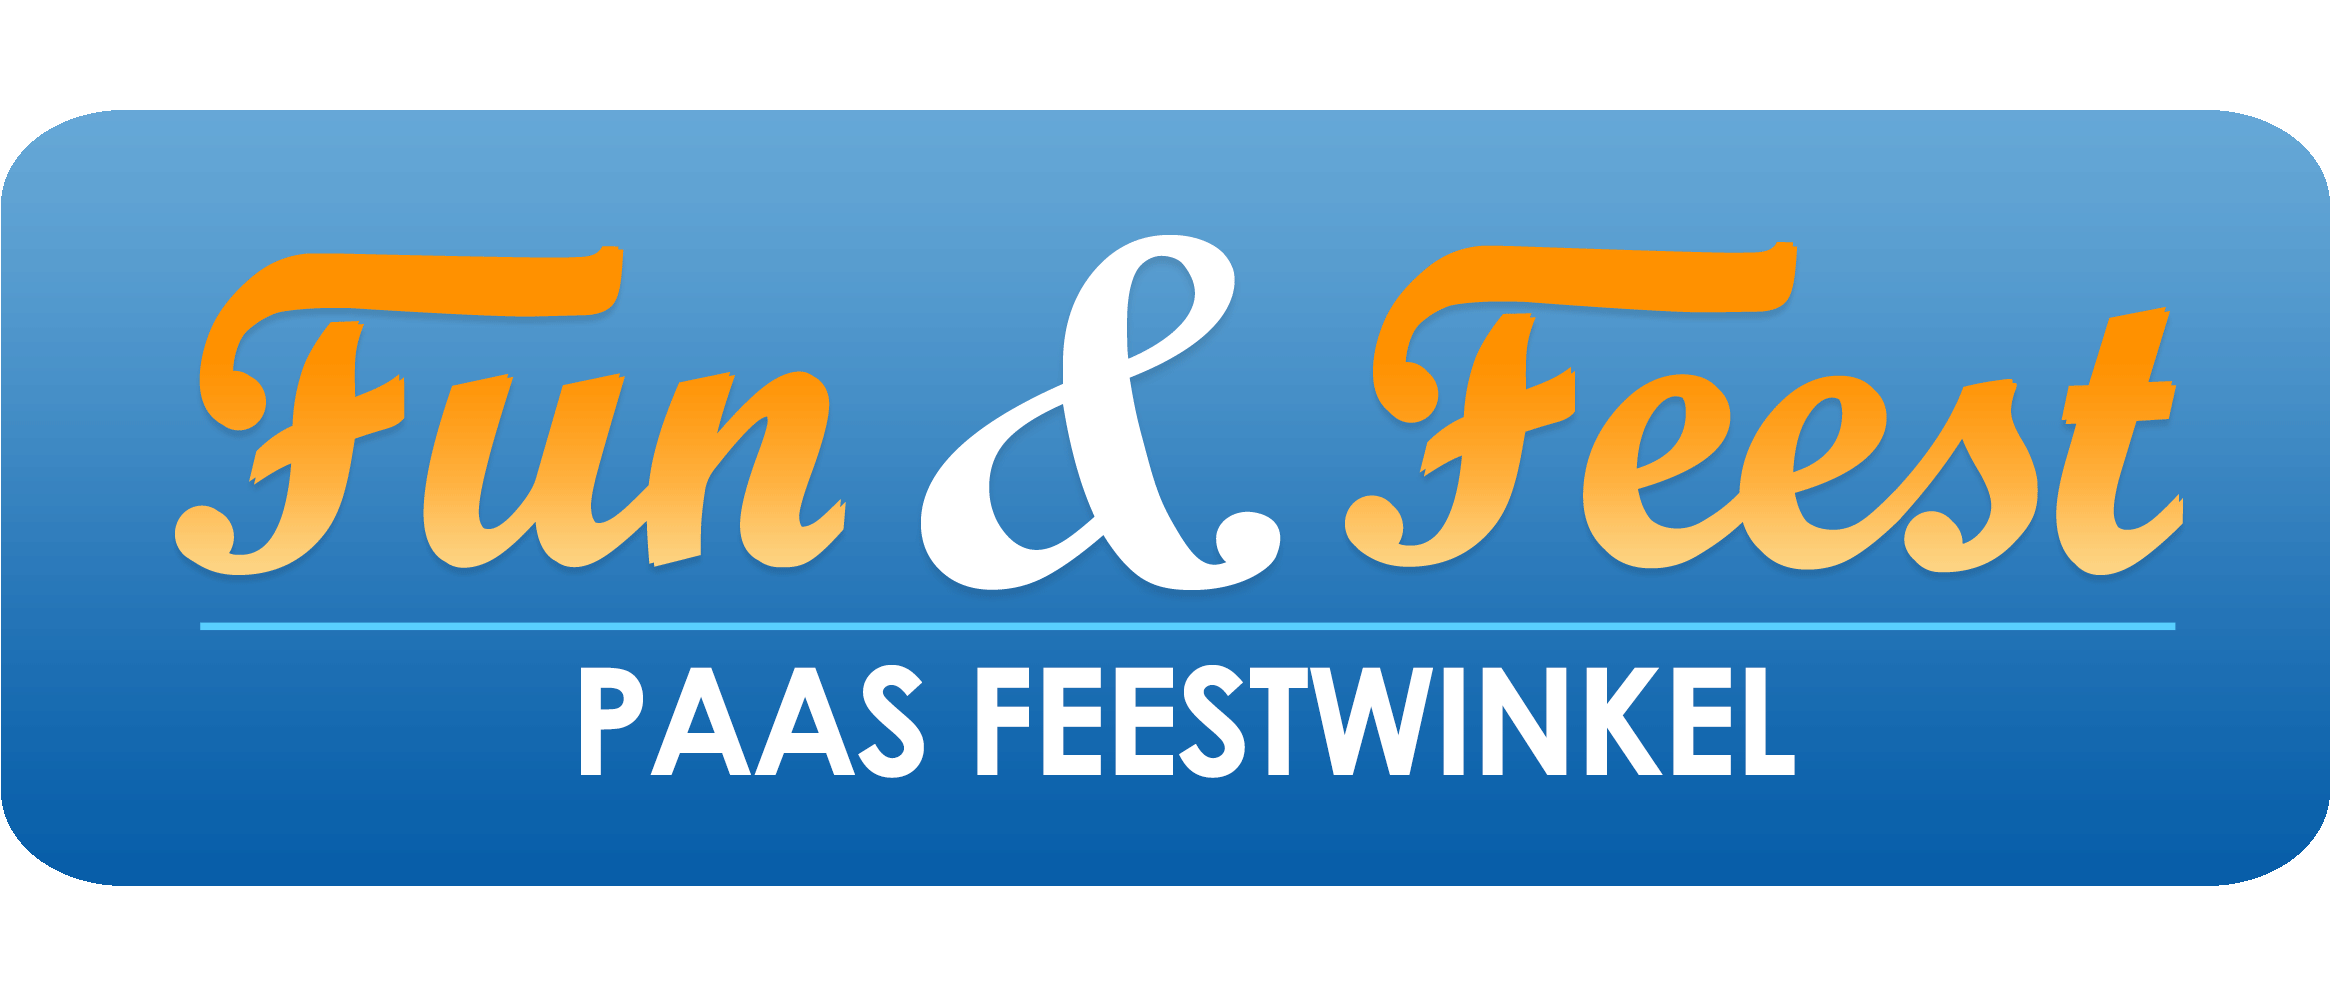 Paas-feestwinkel.nl